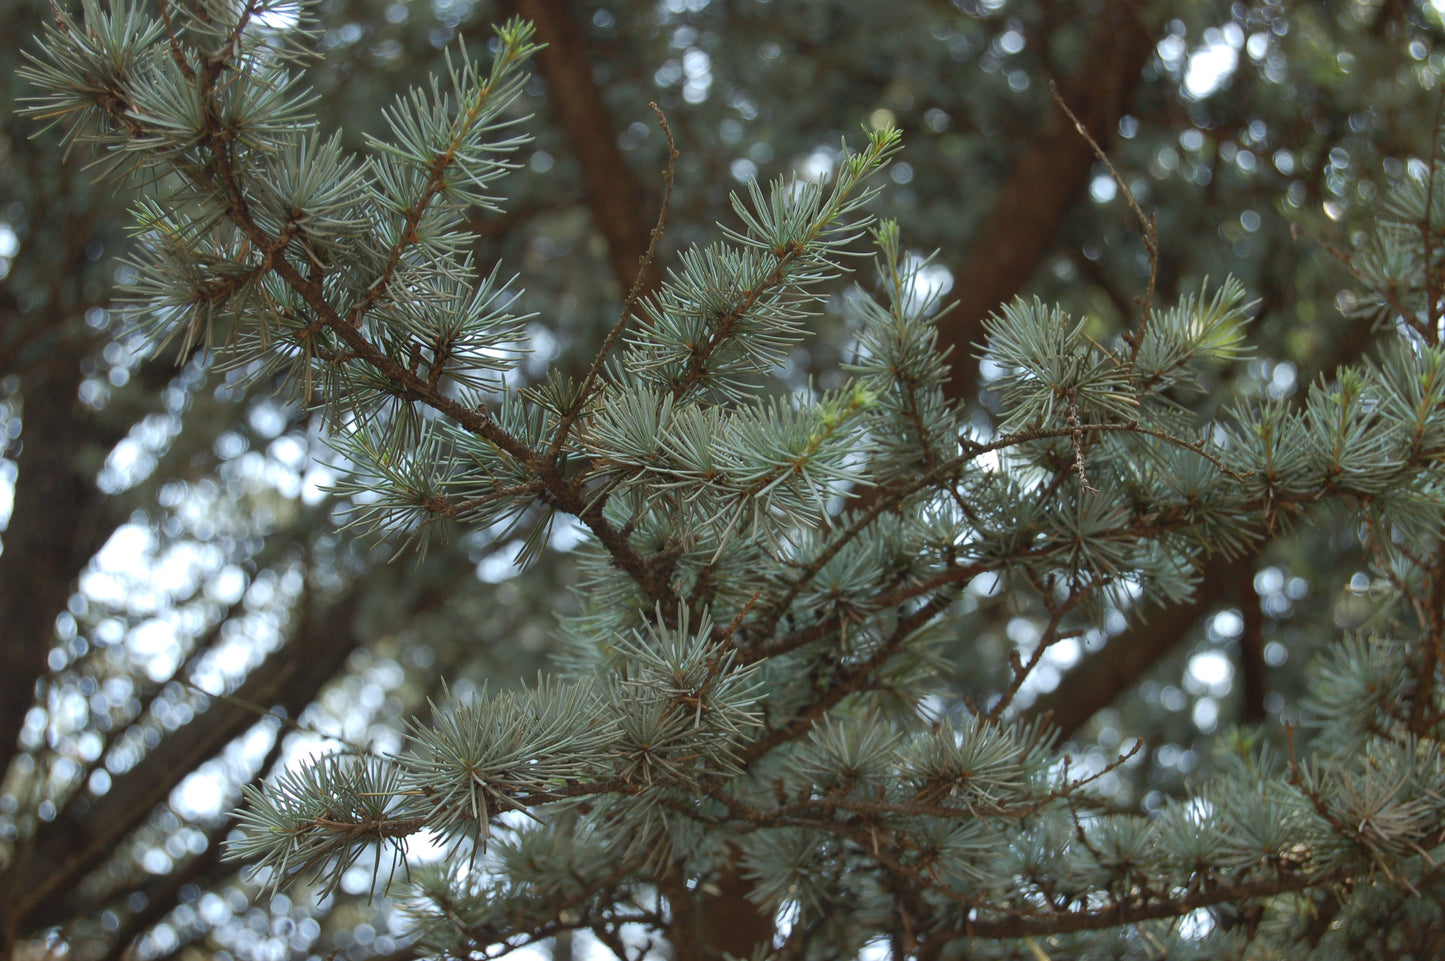 Blue Atlas Cedar (Cedrus atlantica 'Glauca')